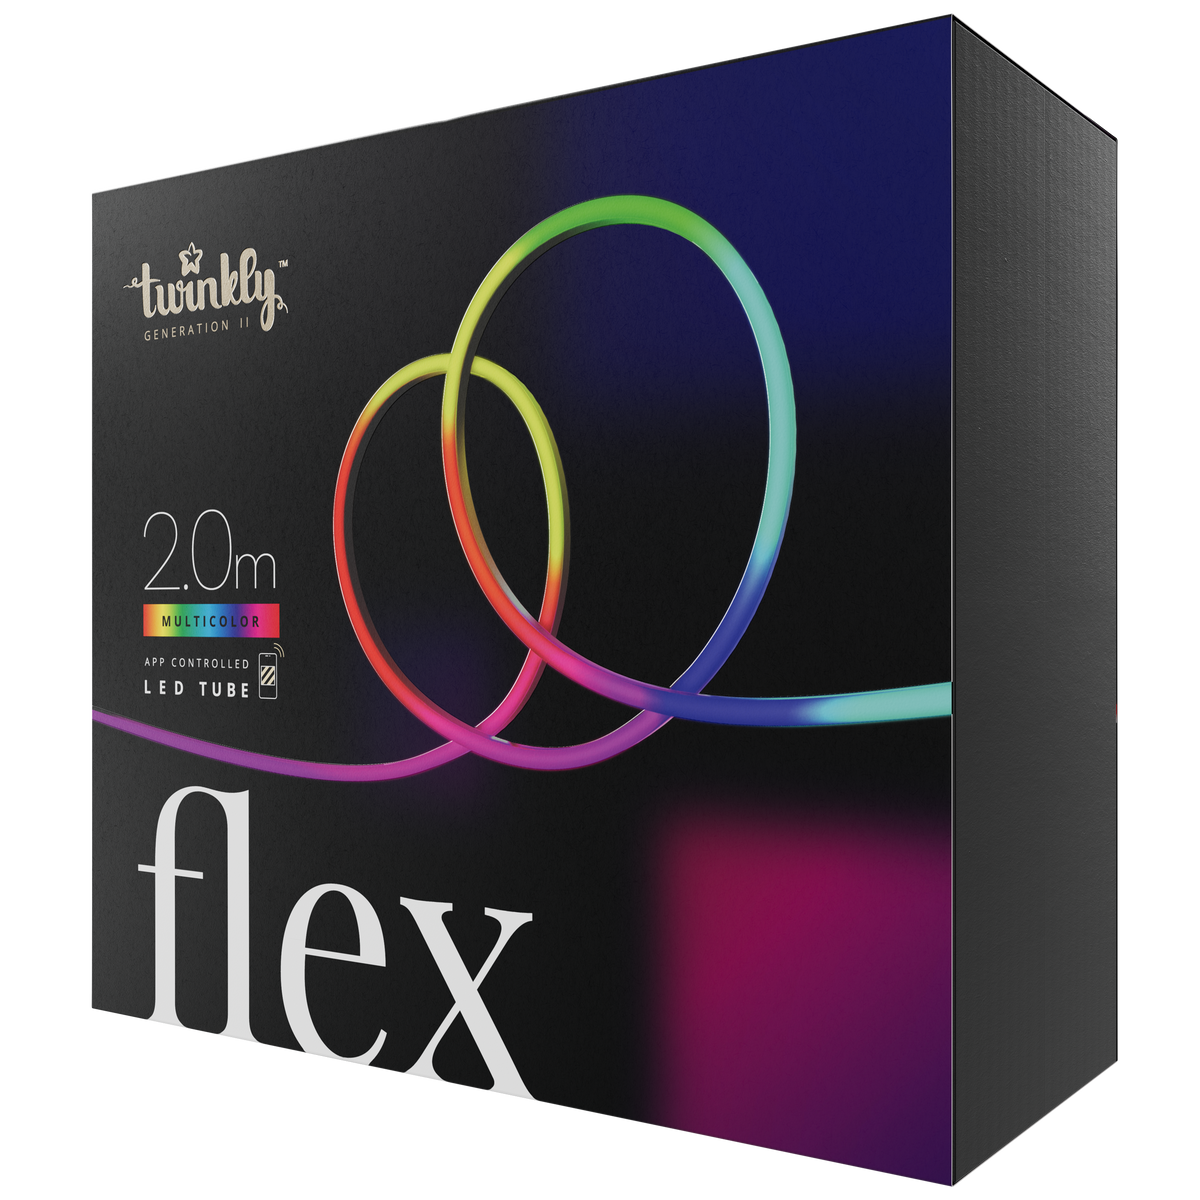 Flex (Multicolor edition)